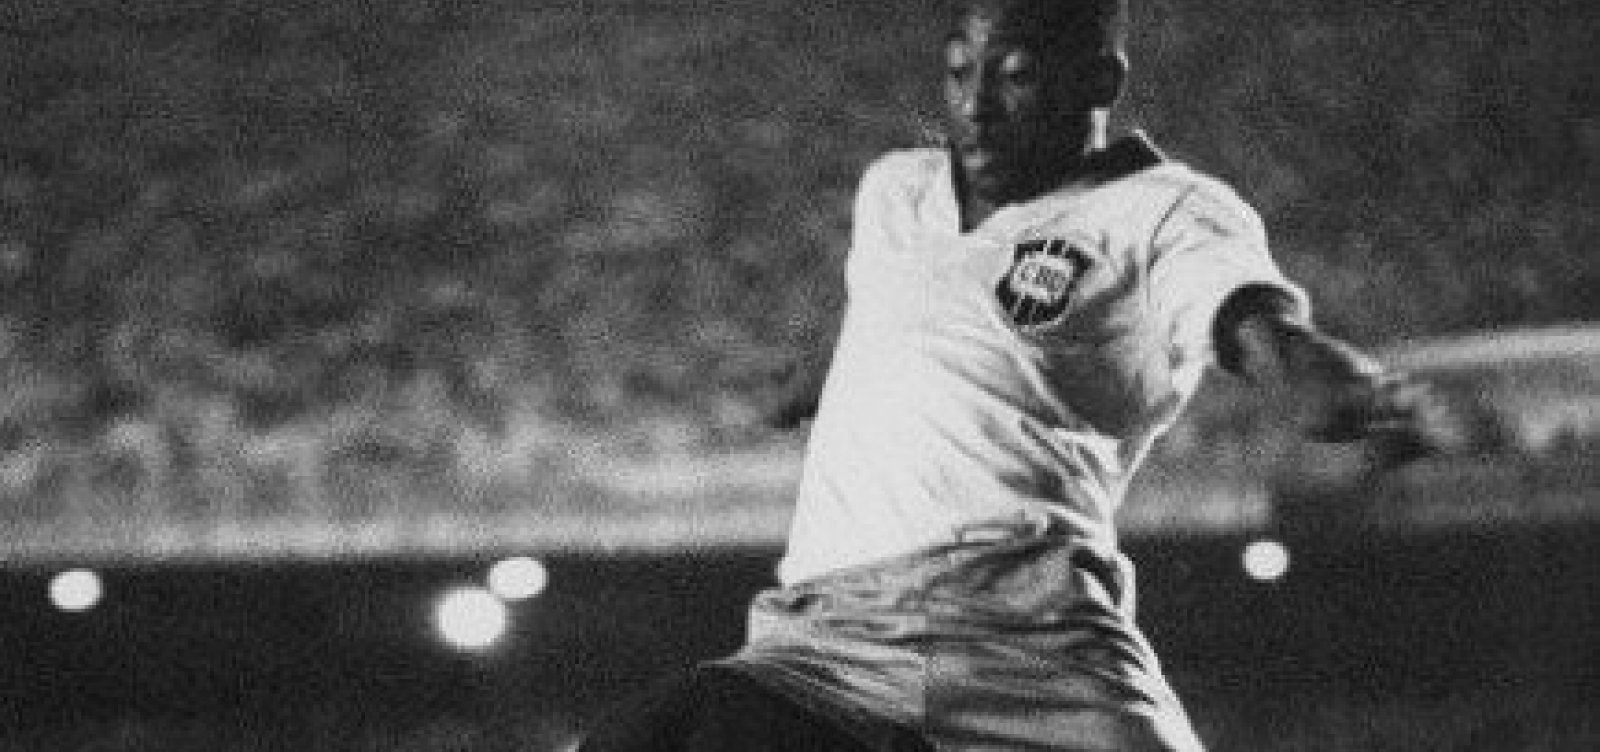 Há 65 anos, Pelé estreava com a camisa da Seleção Brasileira e marcava primeiro gol 